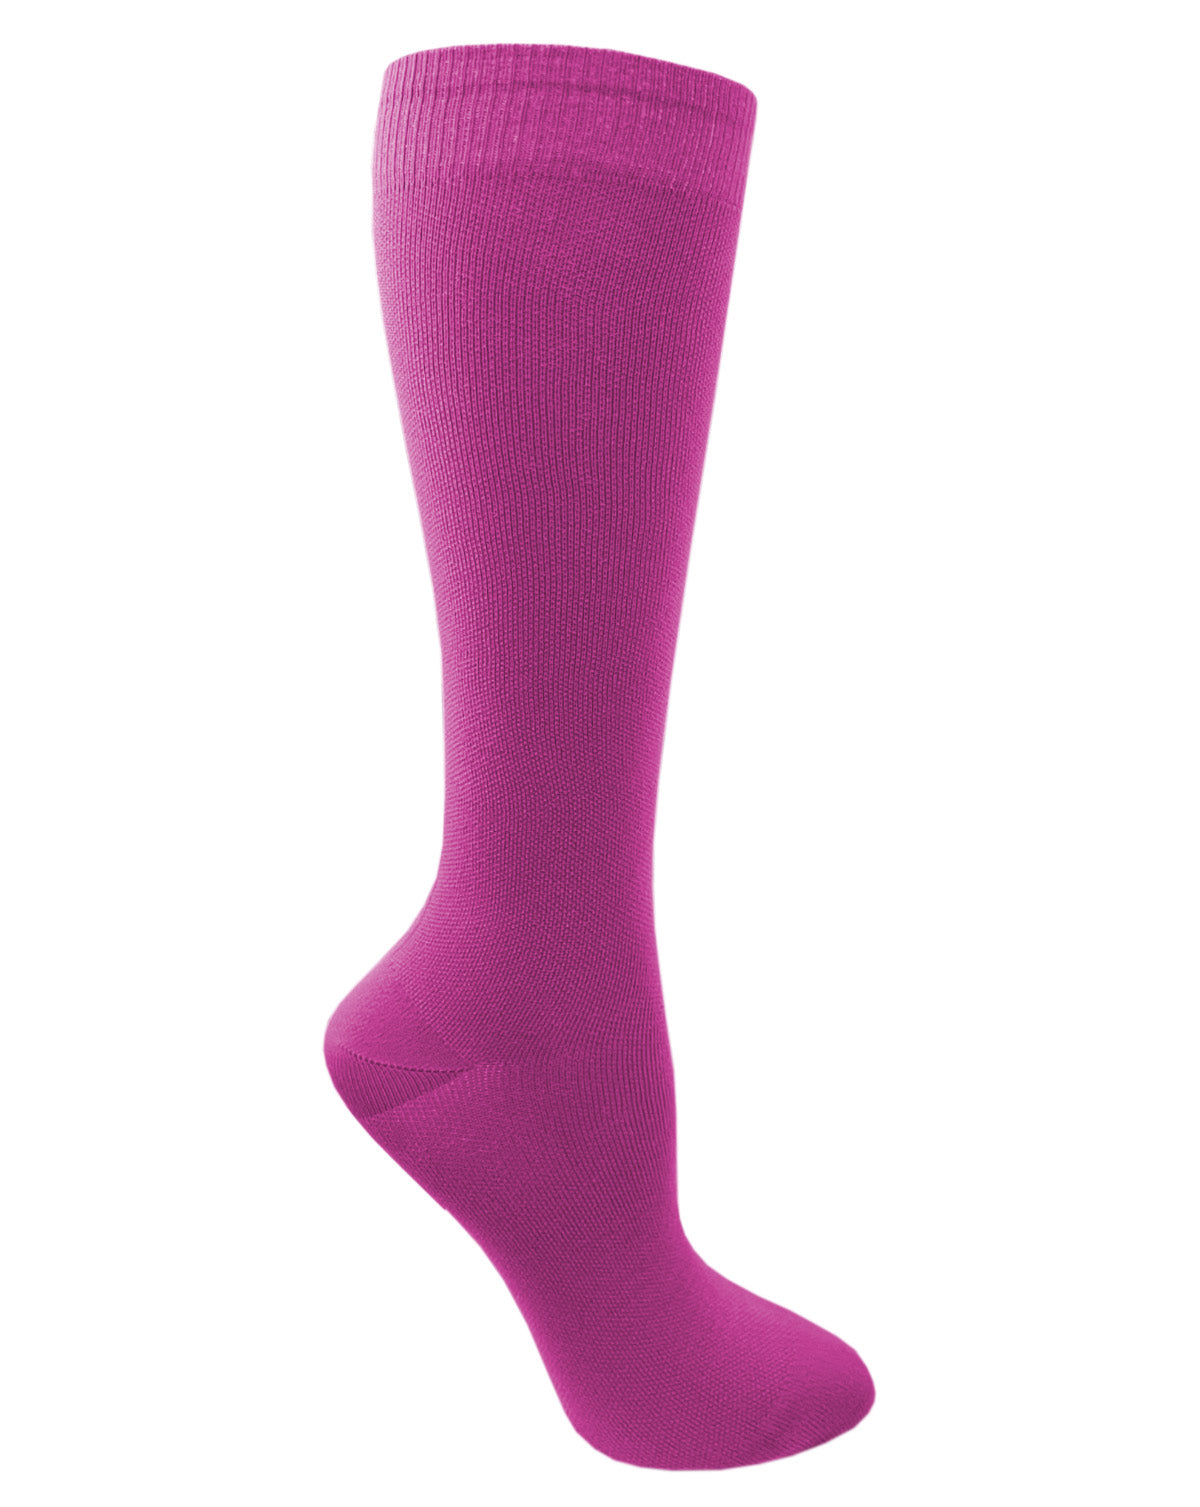 12" Premium Knit Compression Socks